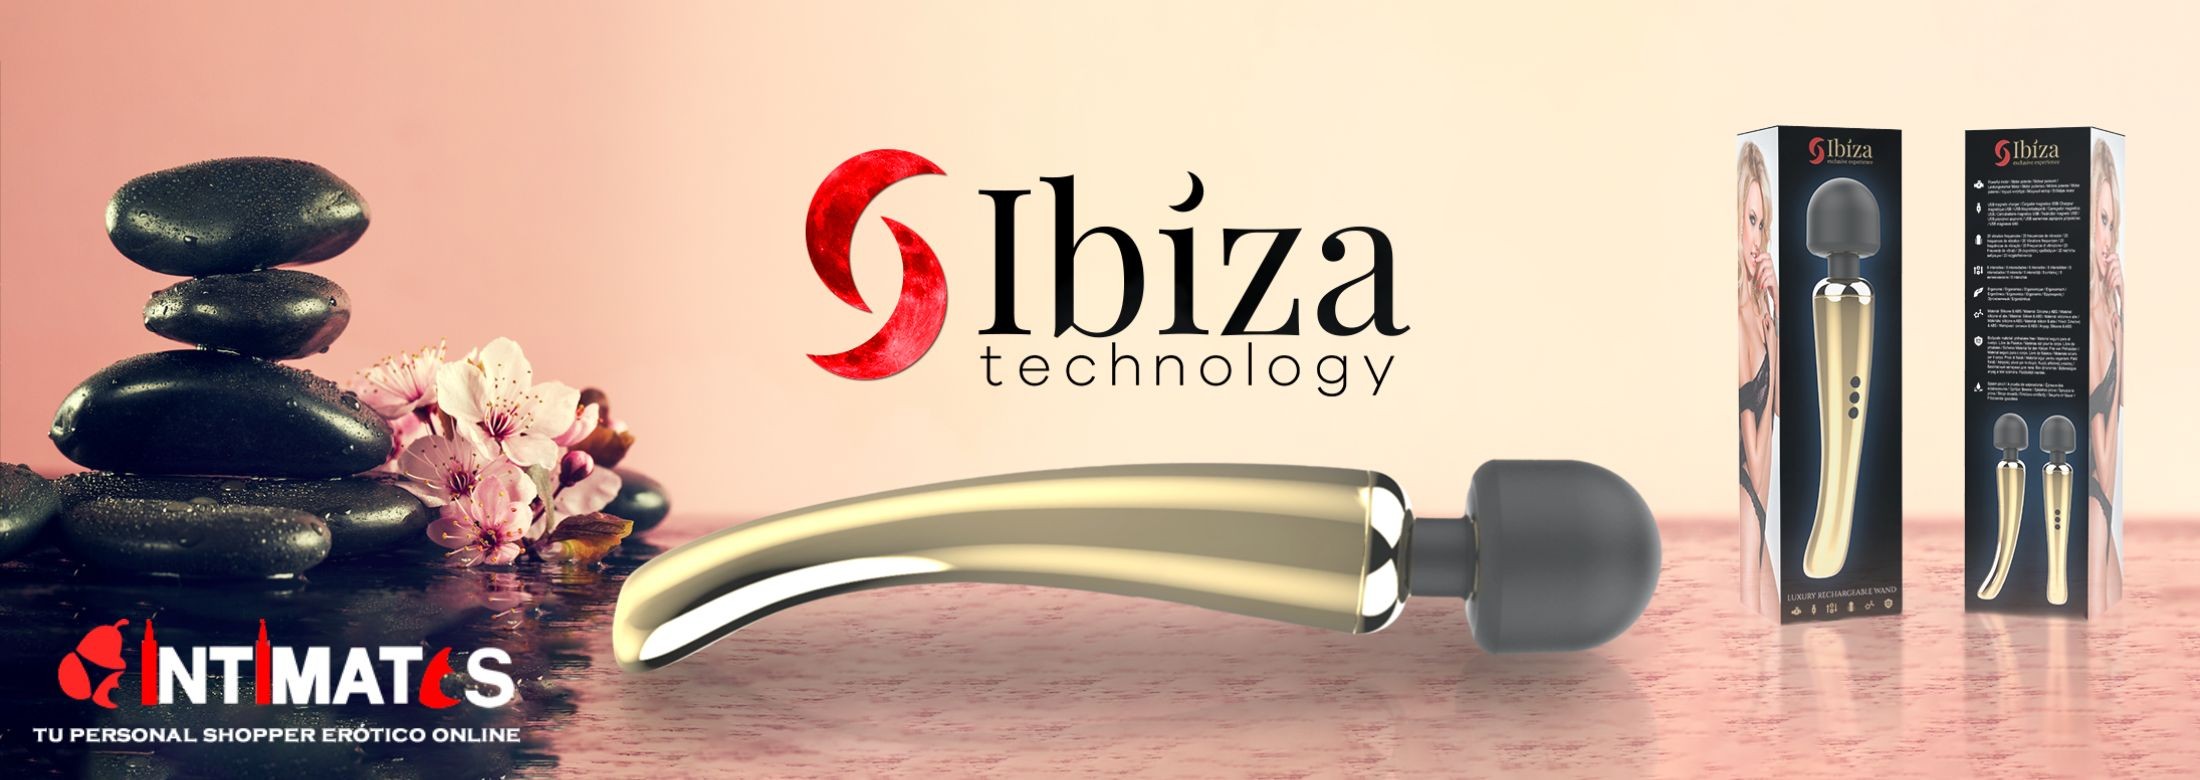 Ibiza y sus exclusivos juguetes eróticos te están esperando en intimates.es "Tu Personal Shopper Erótico"